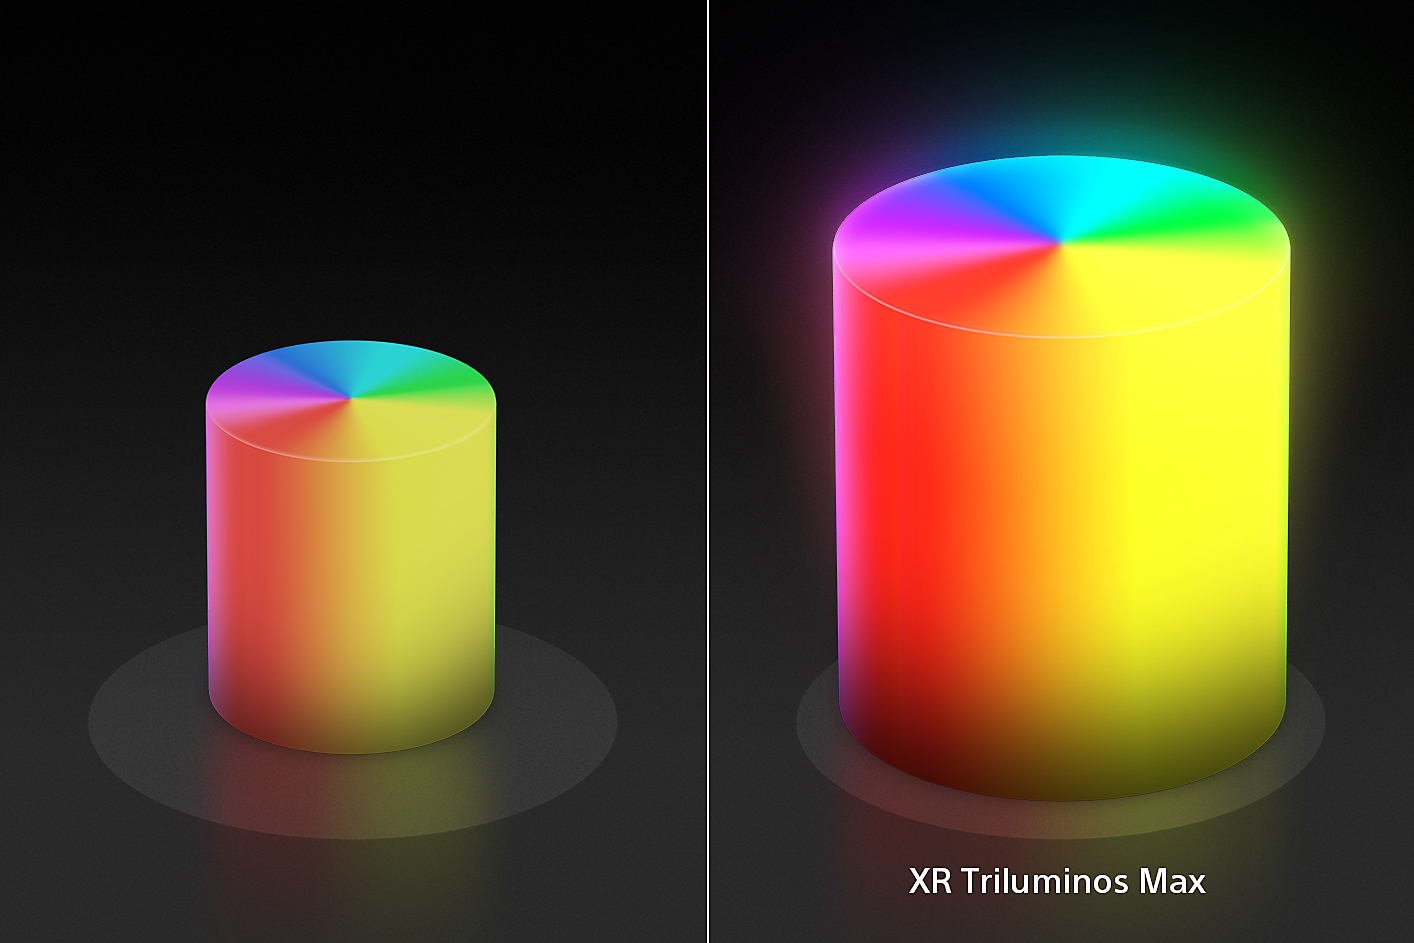 ภาพแยกหน้าจอที่แสดงกรวยสีรูปเทียนจำนวนสองอัน โดยกรวยอันเล็กอยู่ทางด้านซ้าย และกรวยอันใหญ่อยู่ทางด้านขวาโดยมีสีและพื้นผิวที่ได้รับการปรับปรุงด้วย XR Triluminos Max